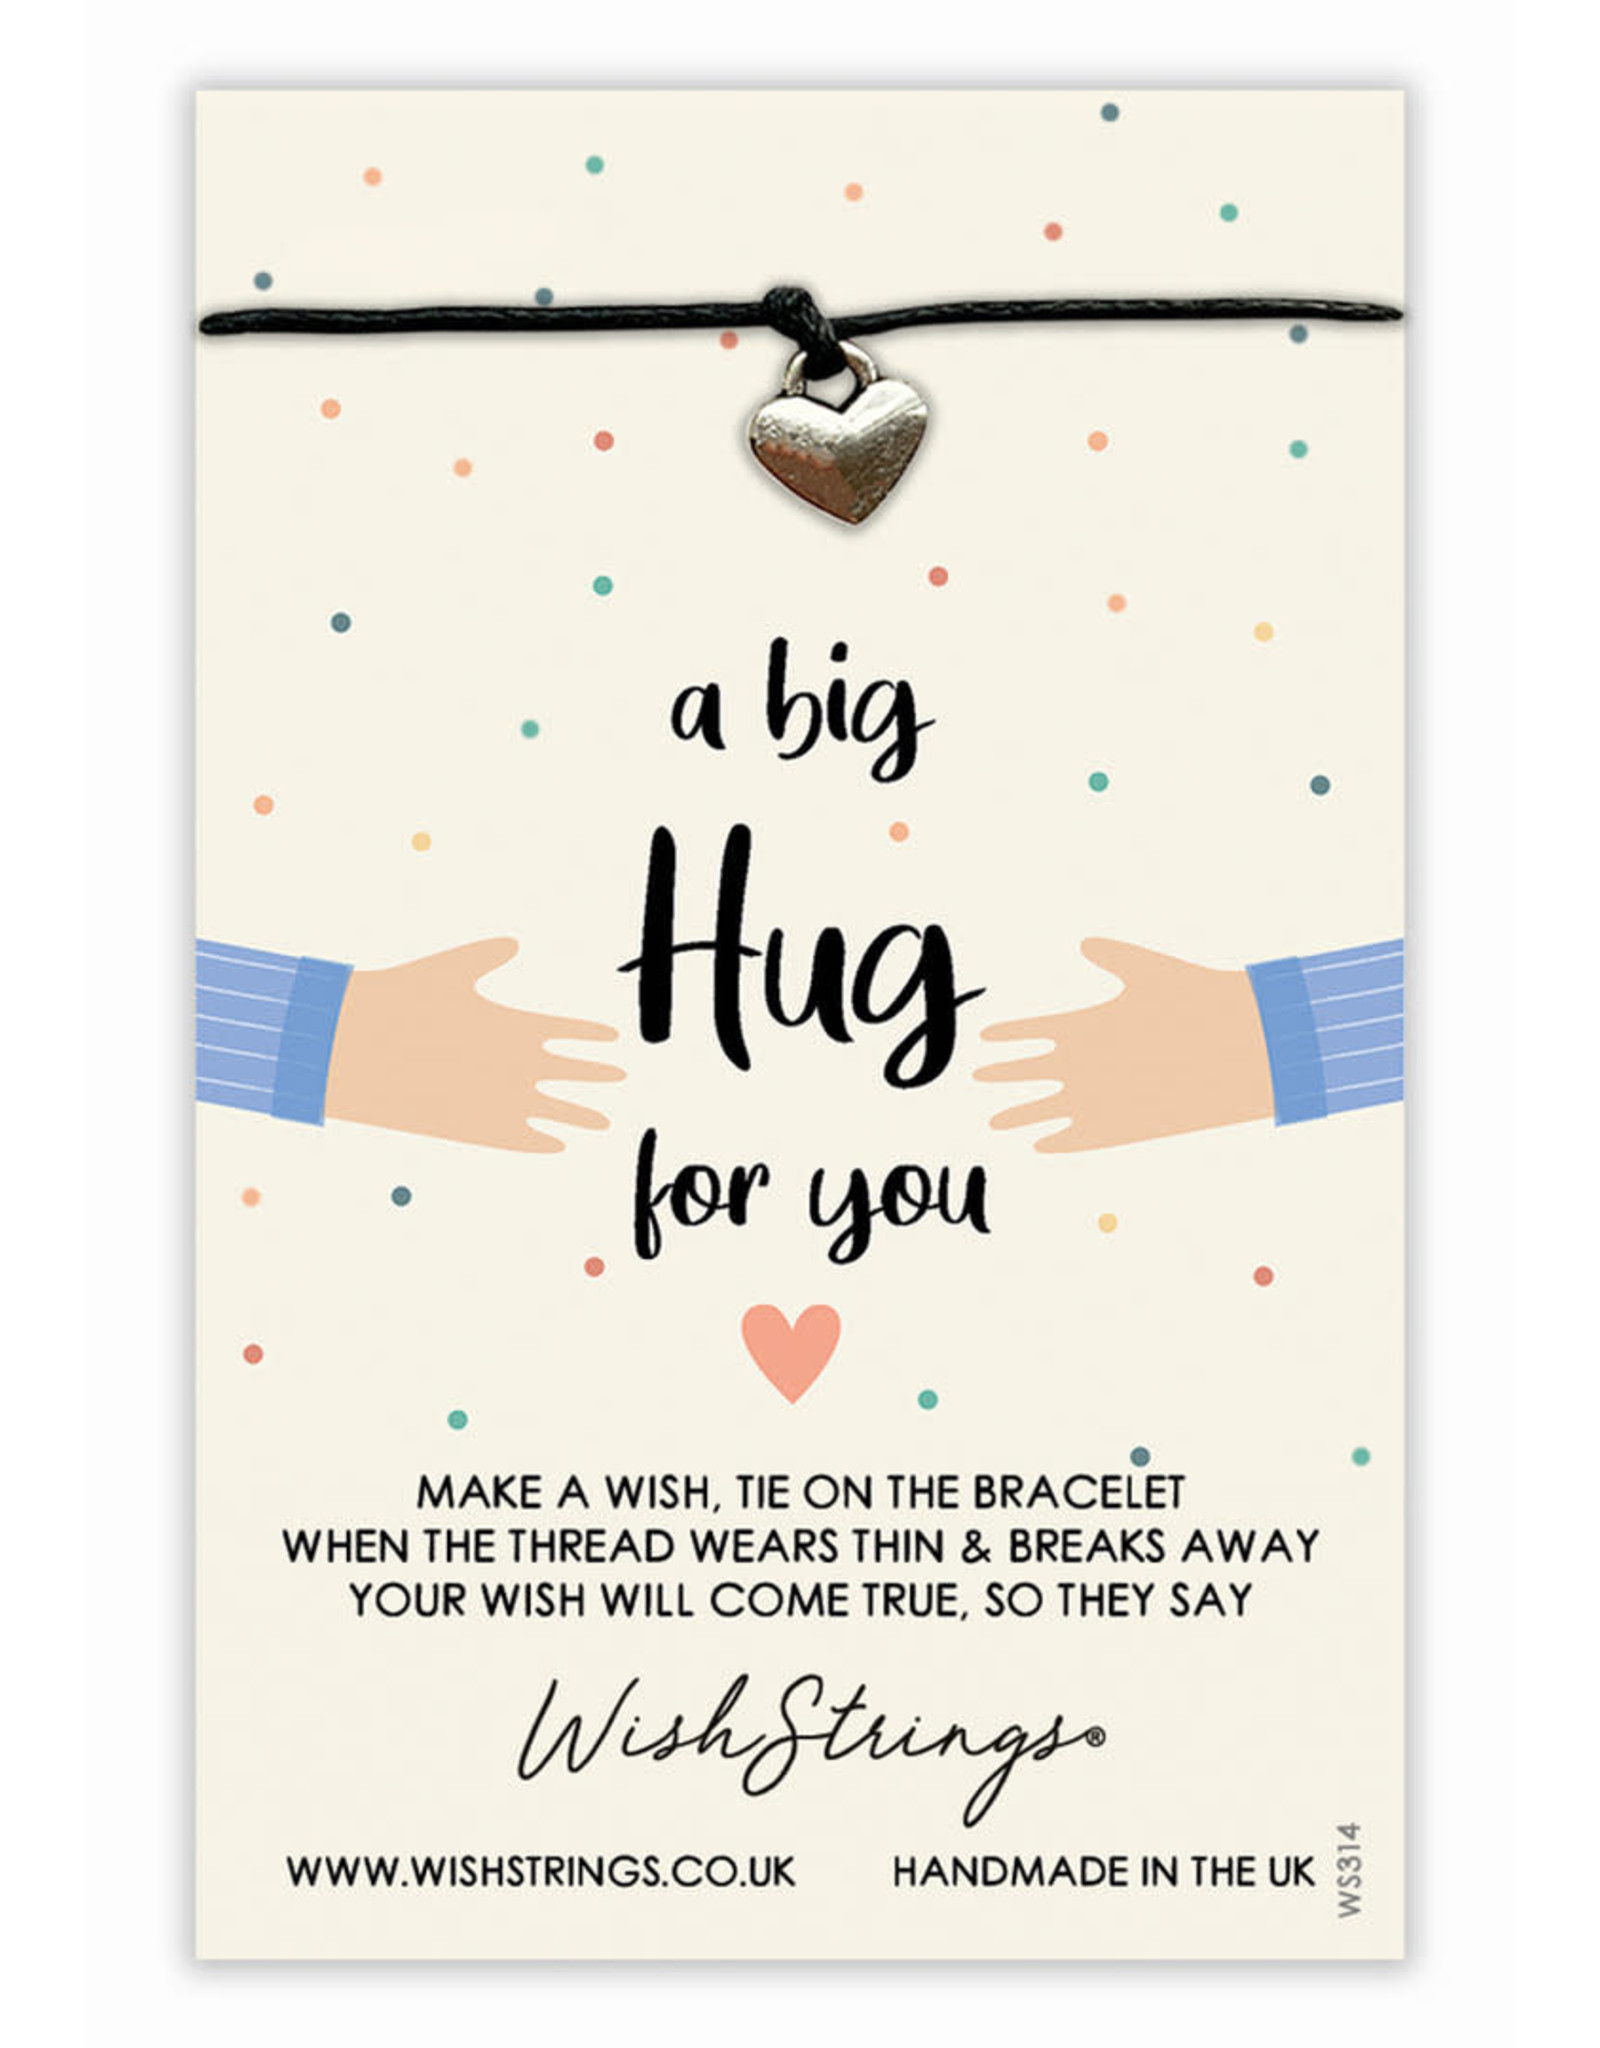 WishString “A big hug for you”